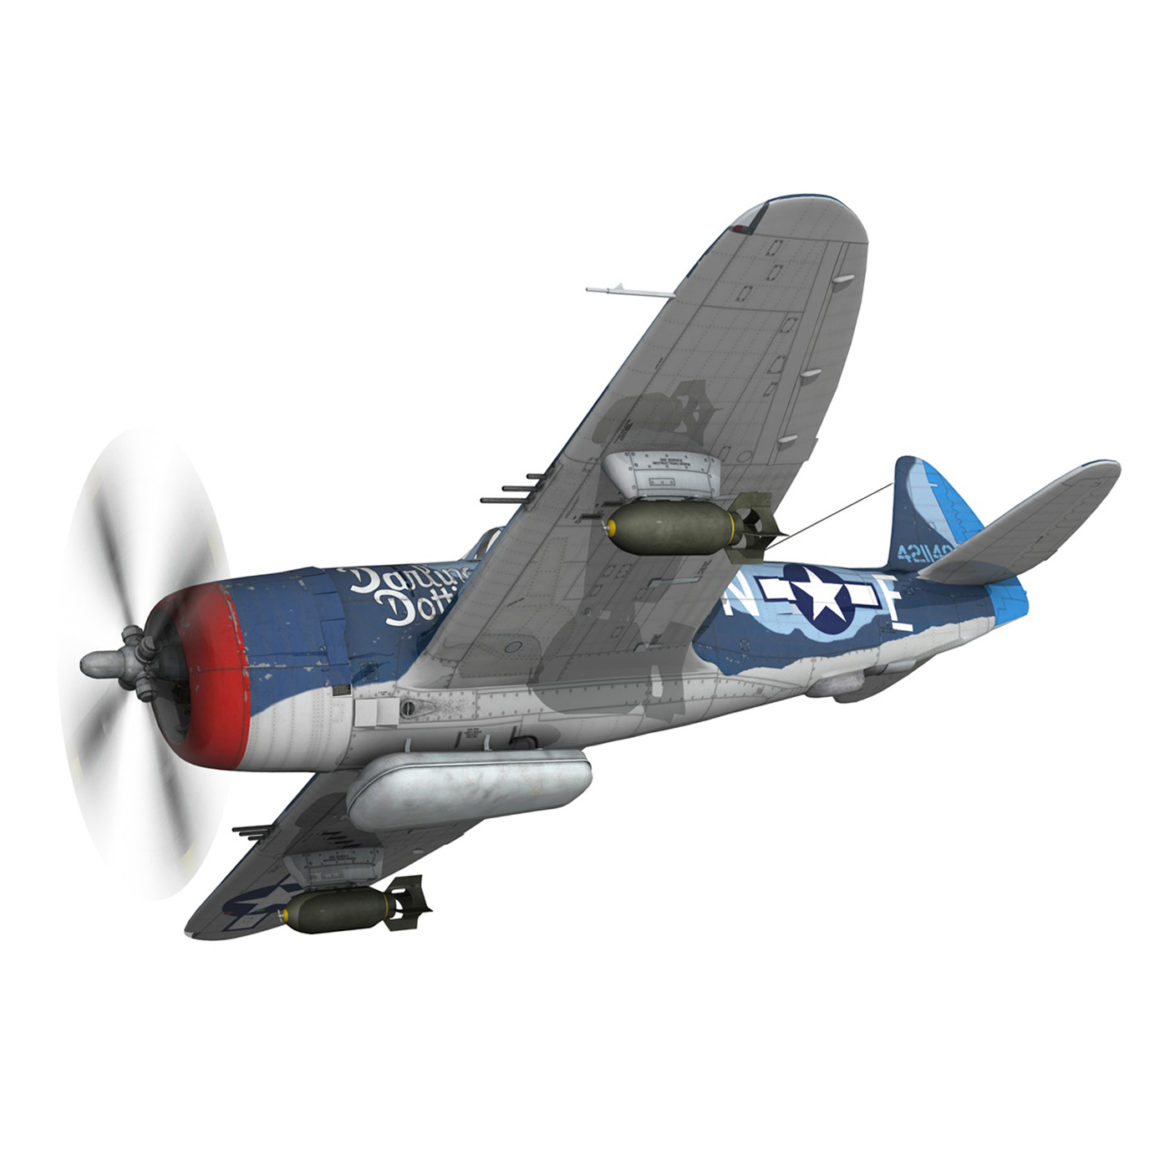 republic p-47m thunderbolt – darling dottie 3d model 3ds c4d lwo lw lws obj fbx 303838